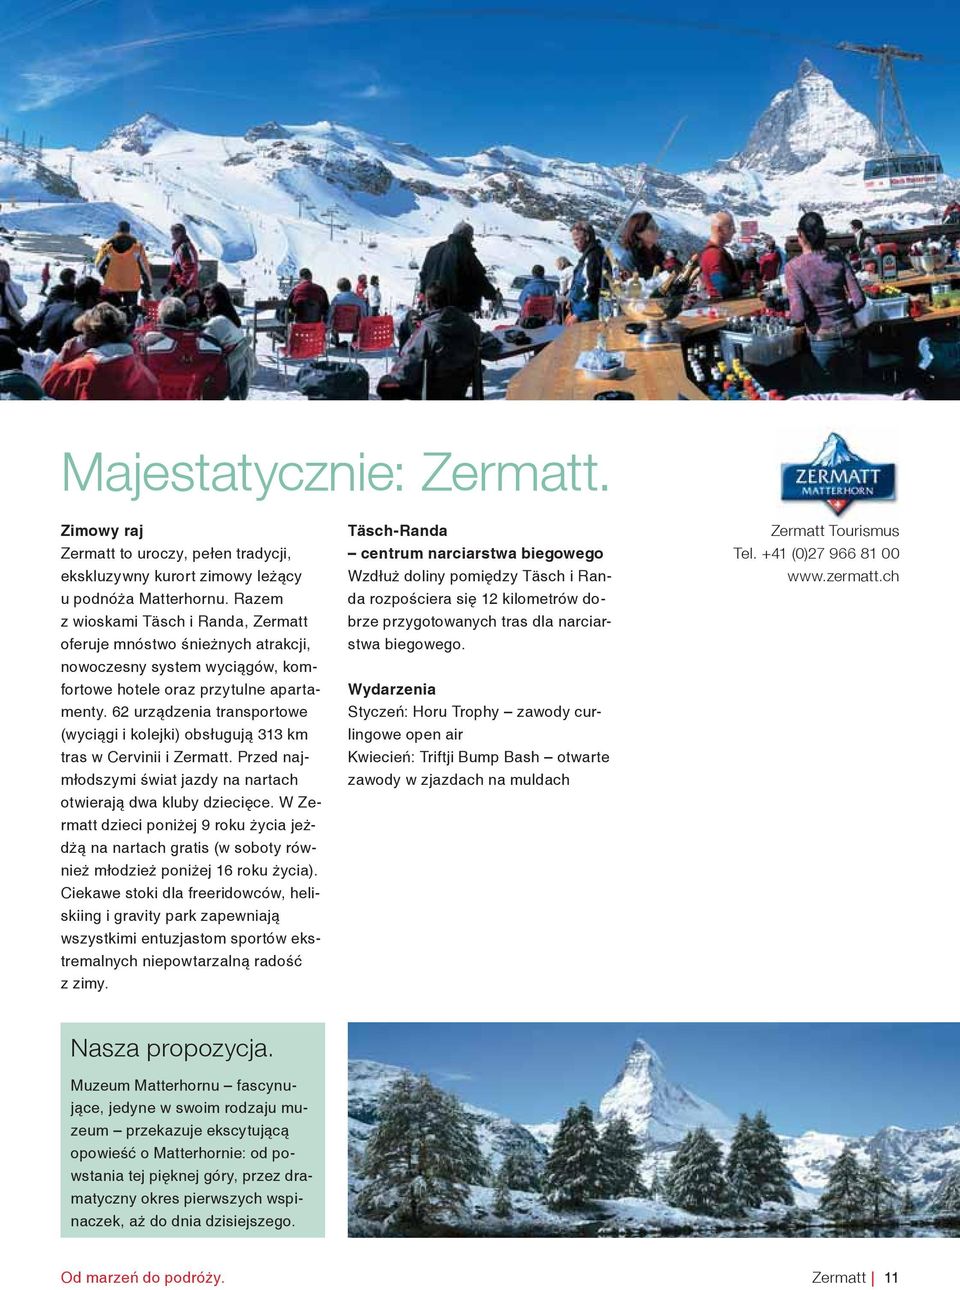 62 urządzenia transportowe (wyciągi i kolejki) obsługują 313 km tras w Cervinii i Zermatt. Przed najmłodszymi świat jazdy na nartach otwierają dwa kluby dziecięce.